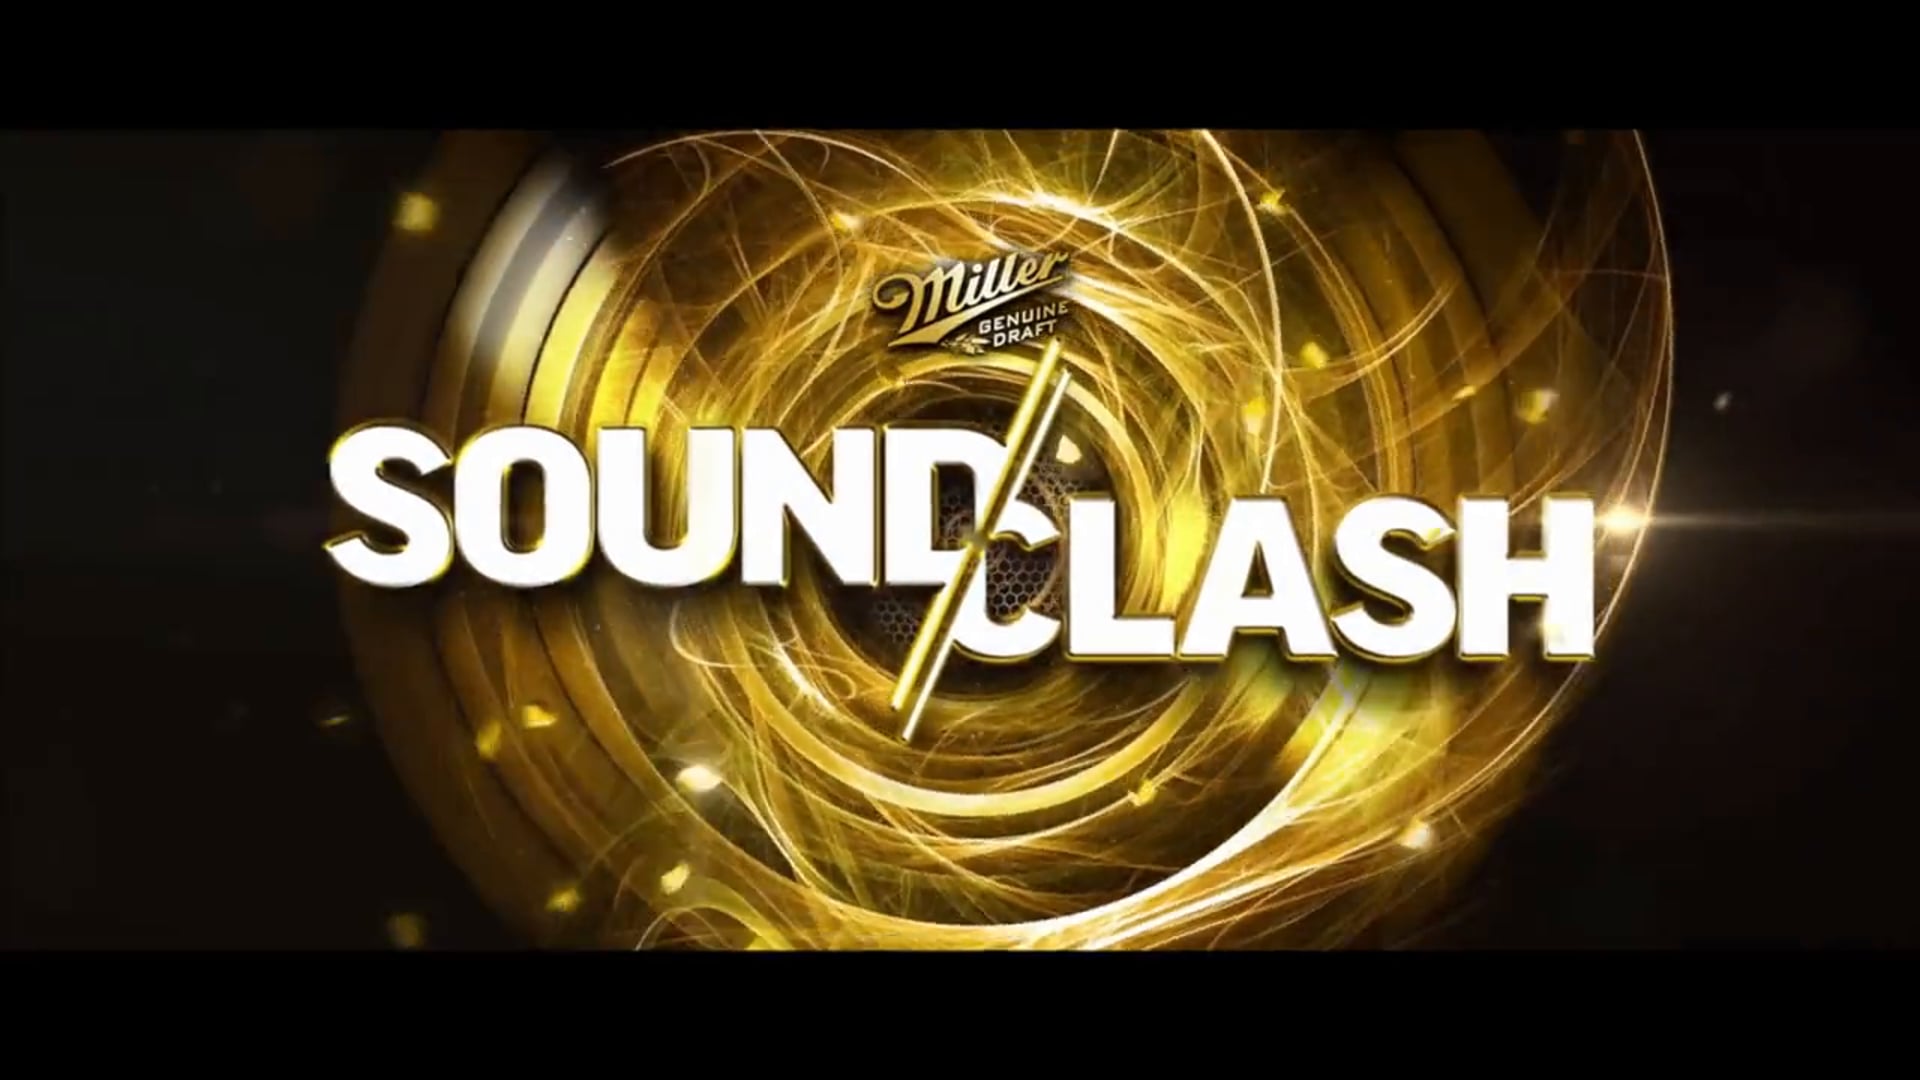 Miller SoundClash Las Vegas 2014 Event Recap